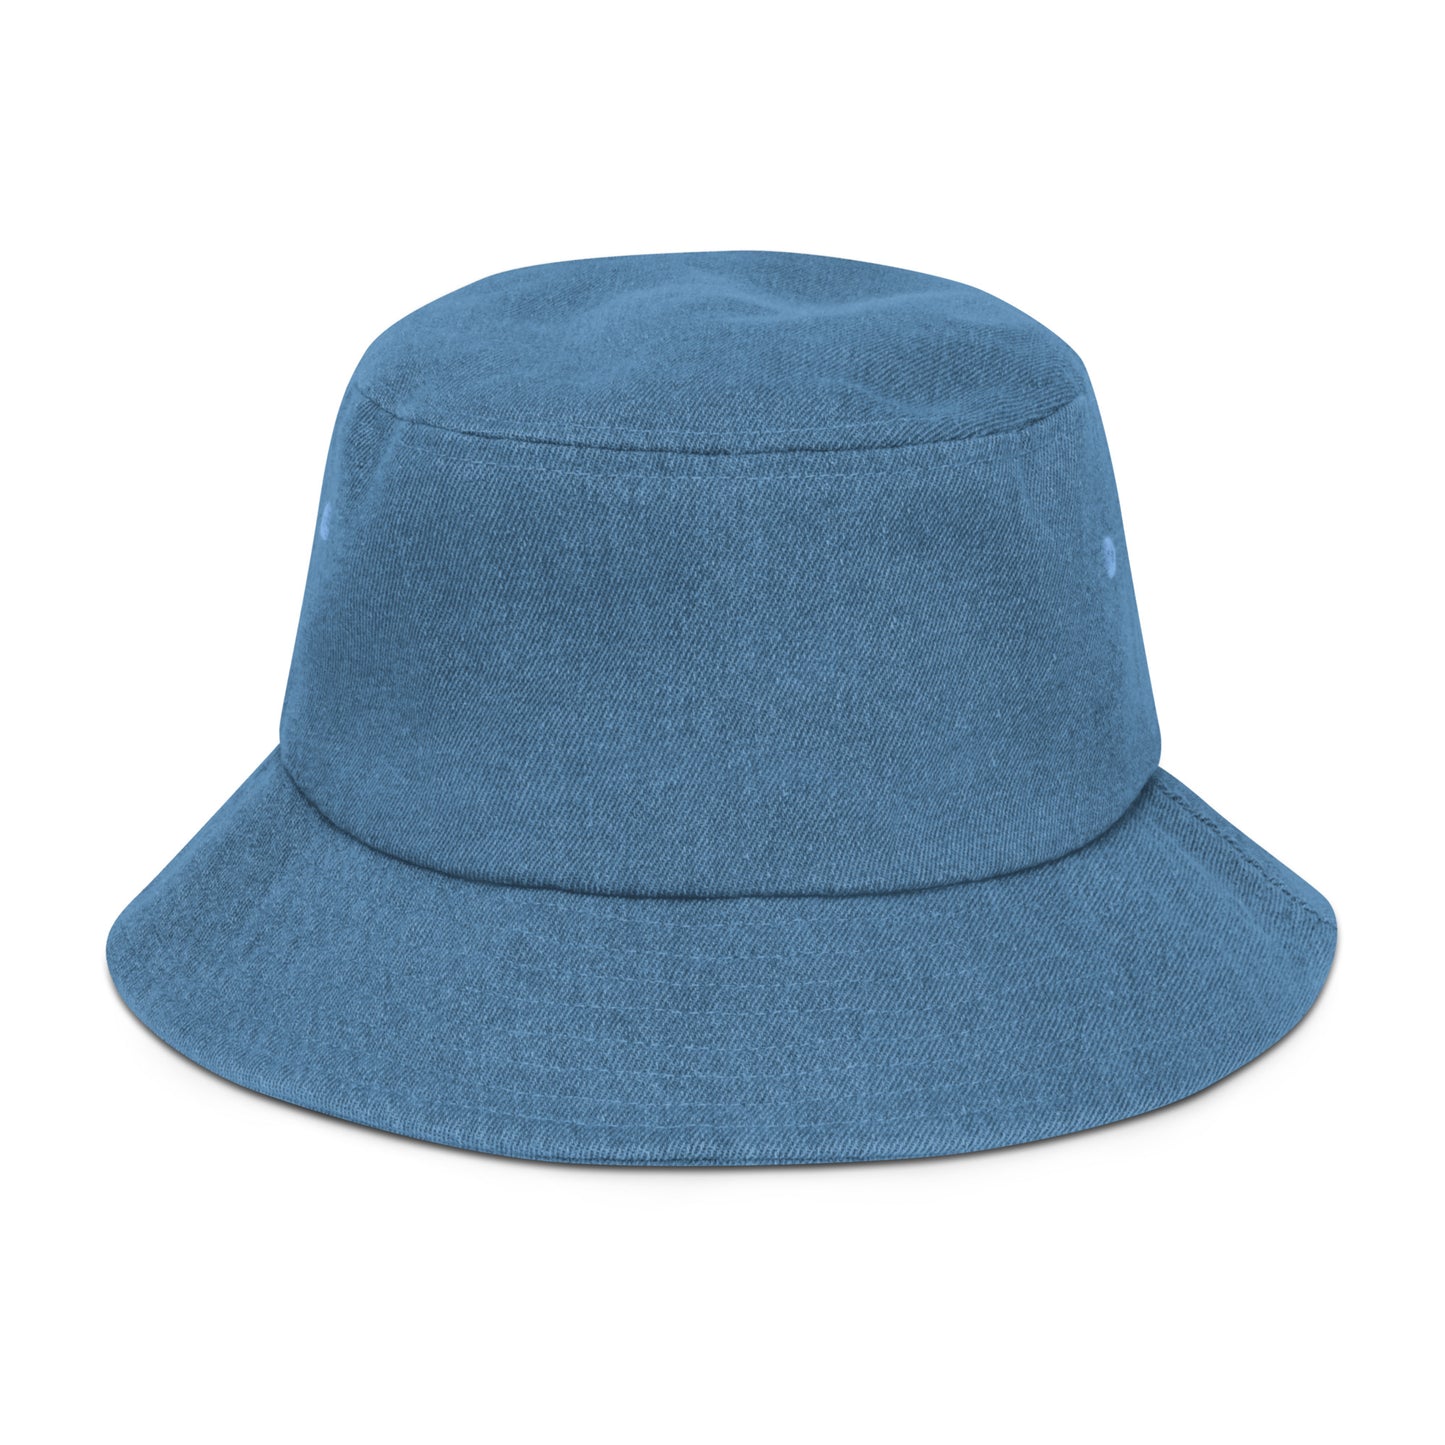 The DPS Denim bucket hat